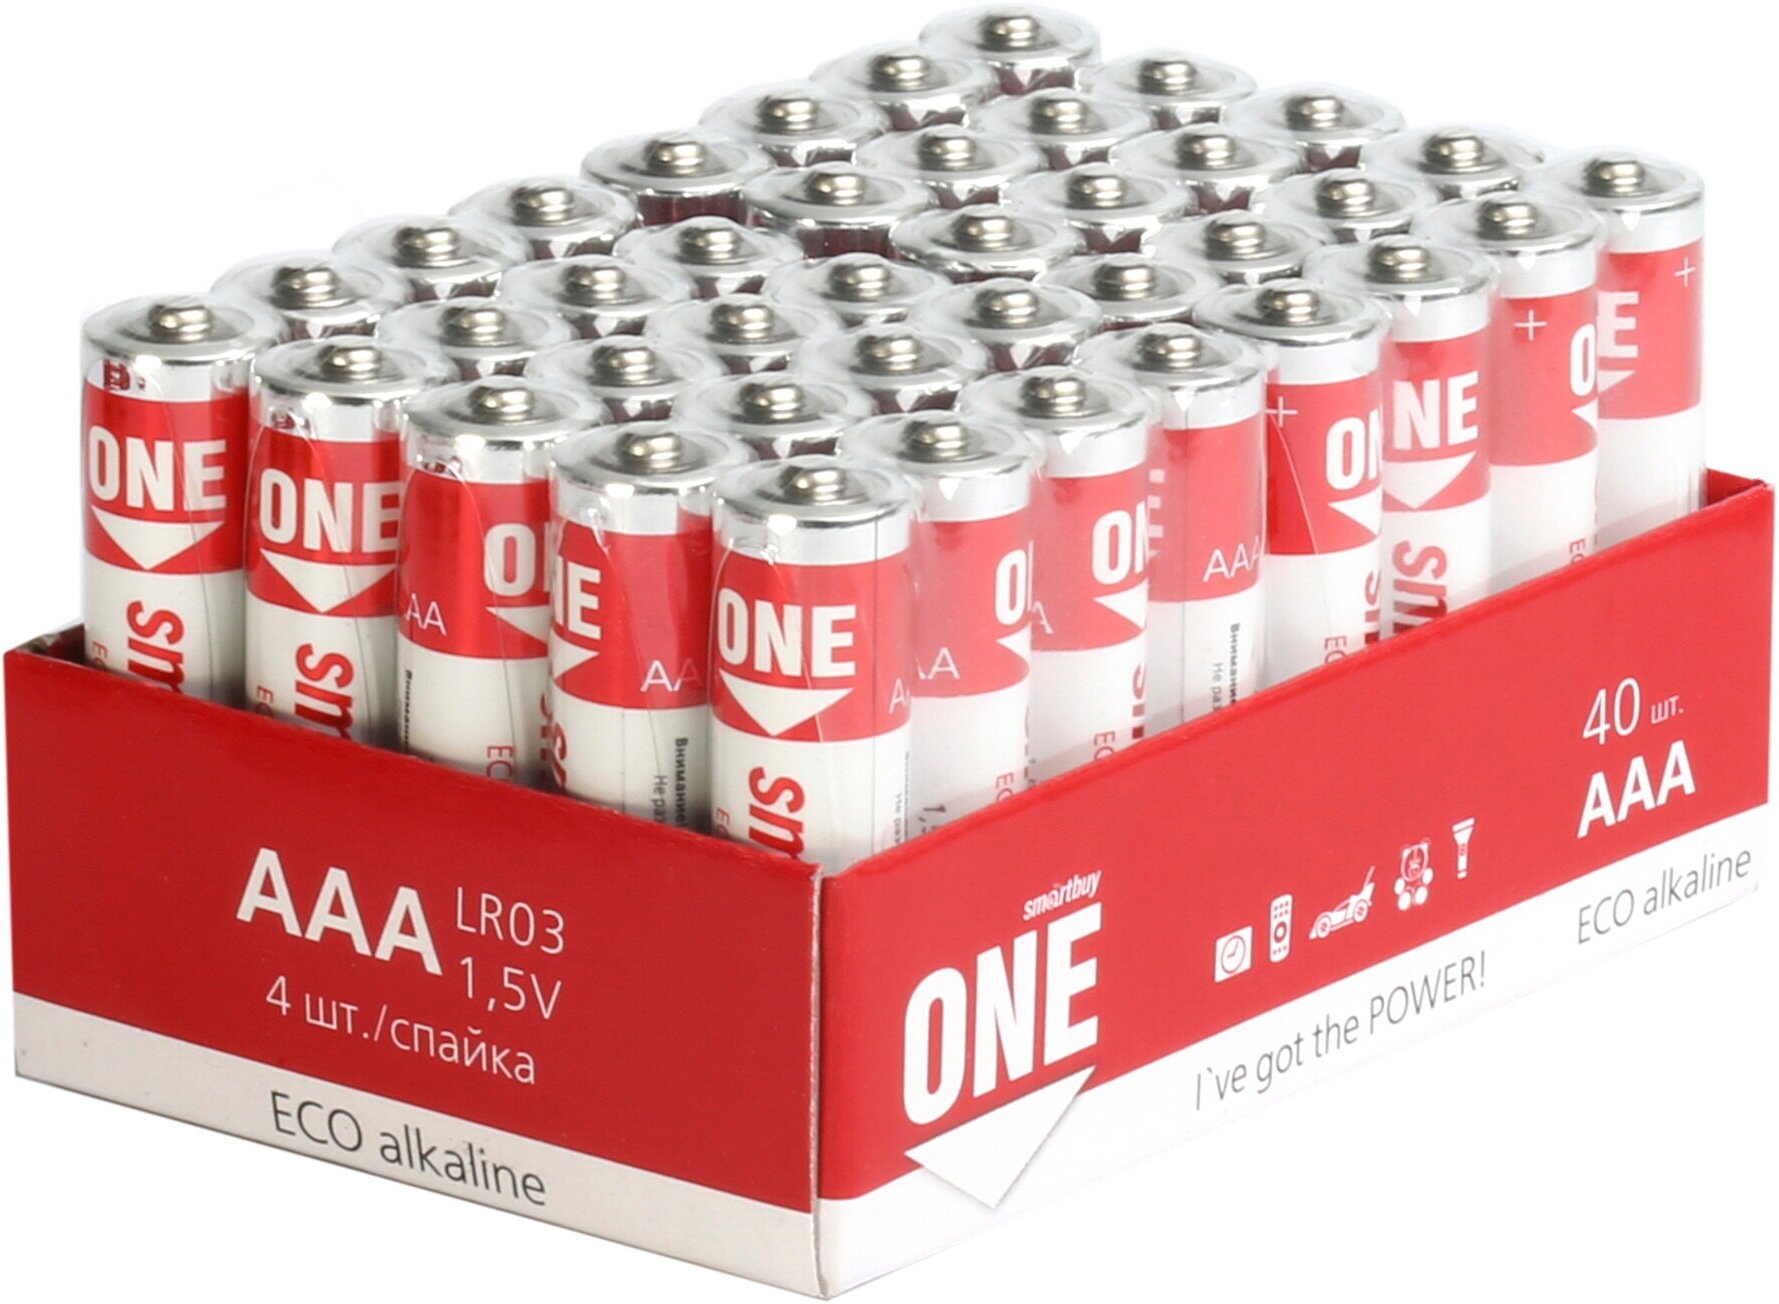 Батарейка SmartBuy One Eco Alkaline AAA, 40 шт.